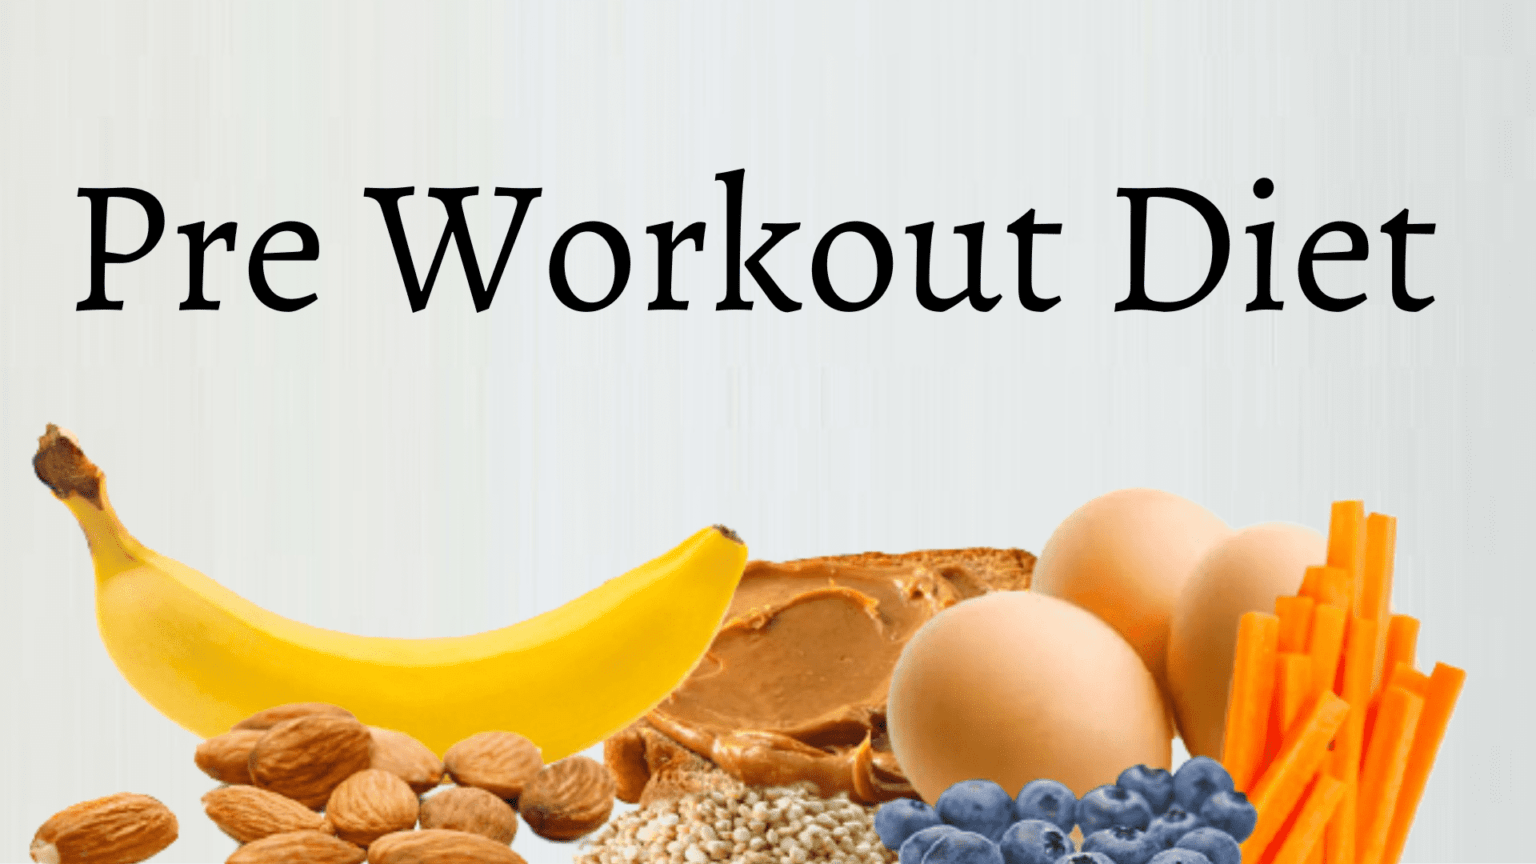 Pre Workout Diet 1536x864 